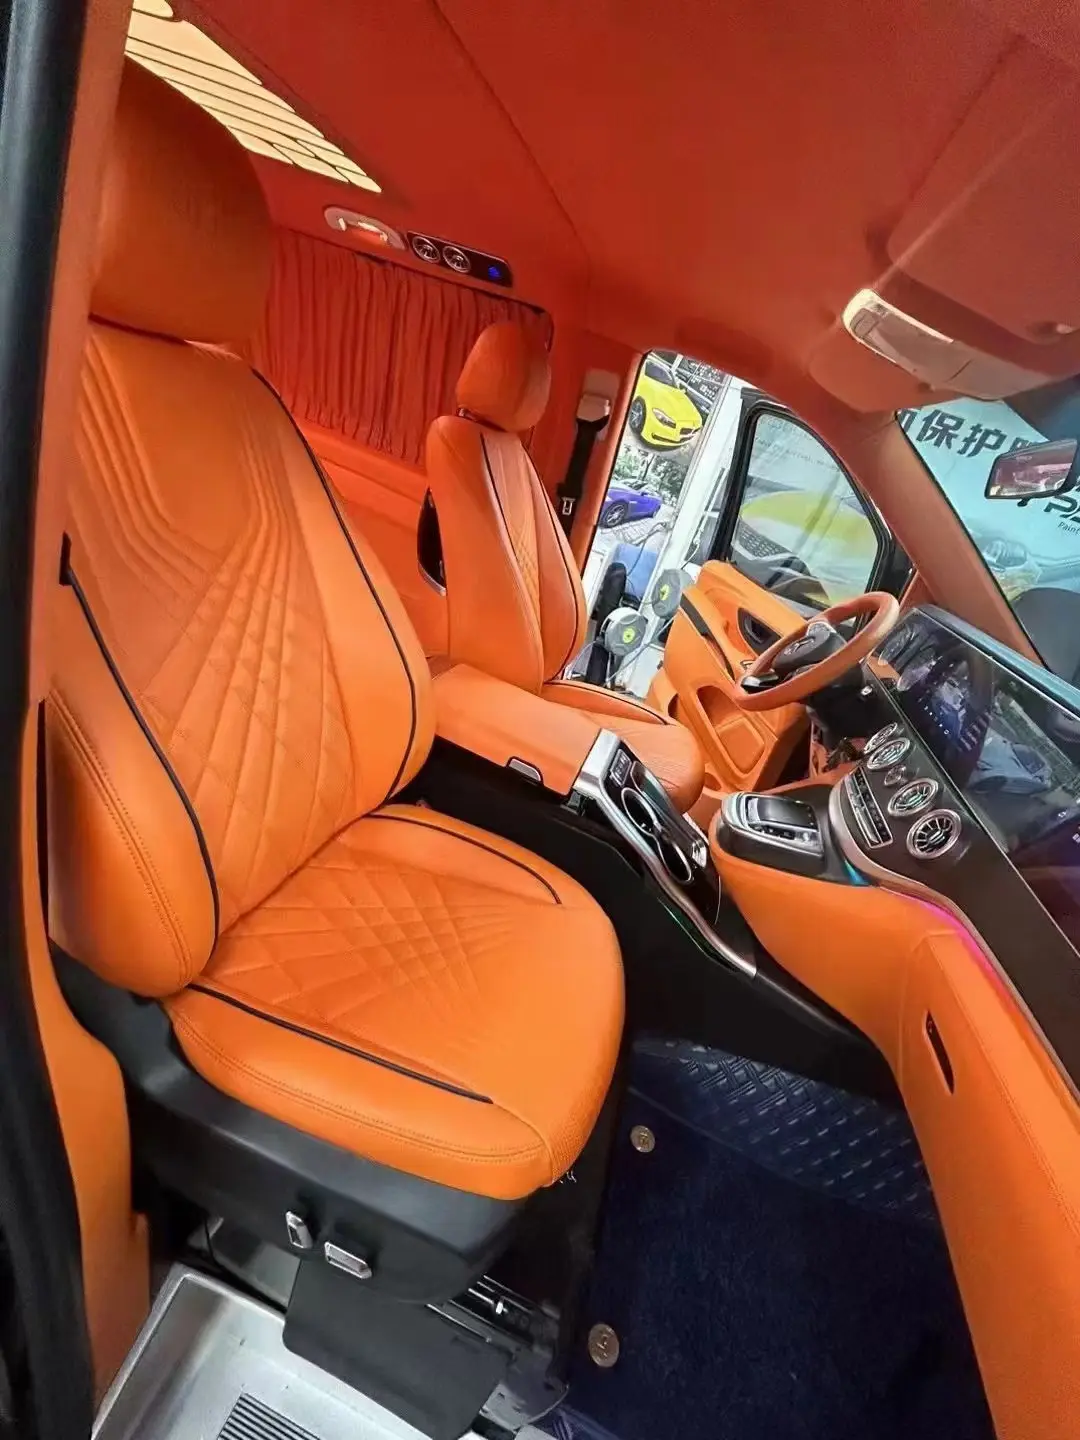 Popular mais novo assento de carro VIP de luxo para MPV V-Class Alphard mpv, fabricação de fábrica na China